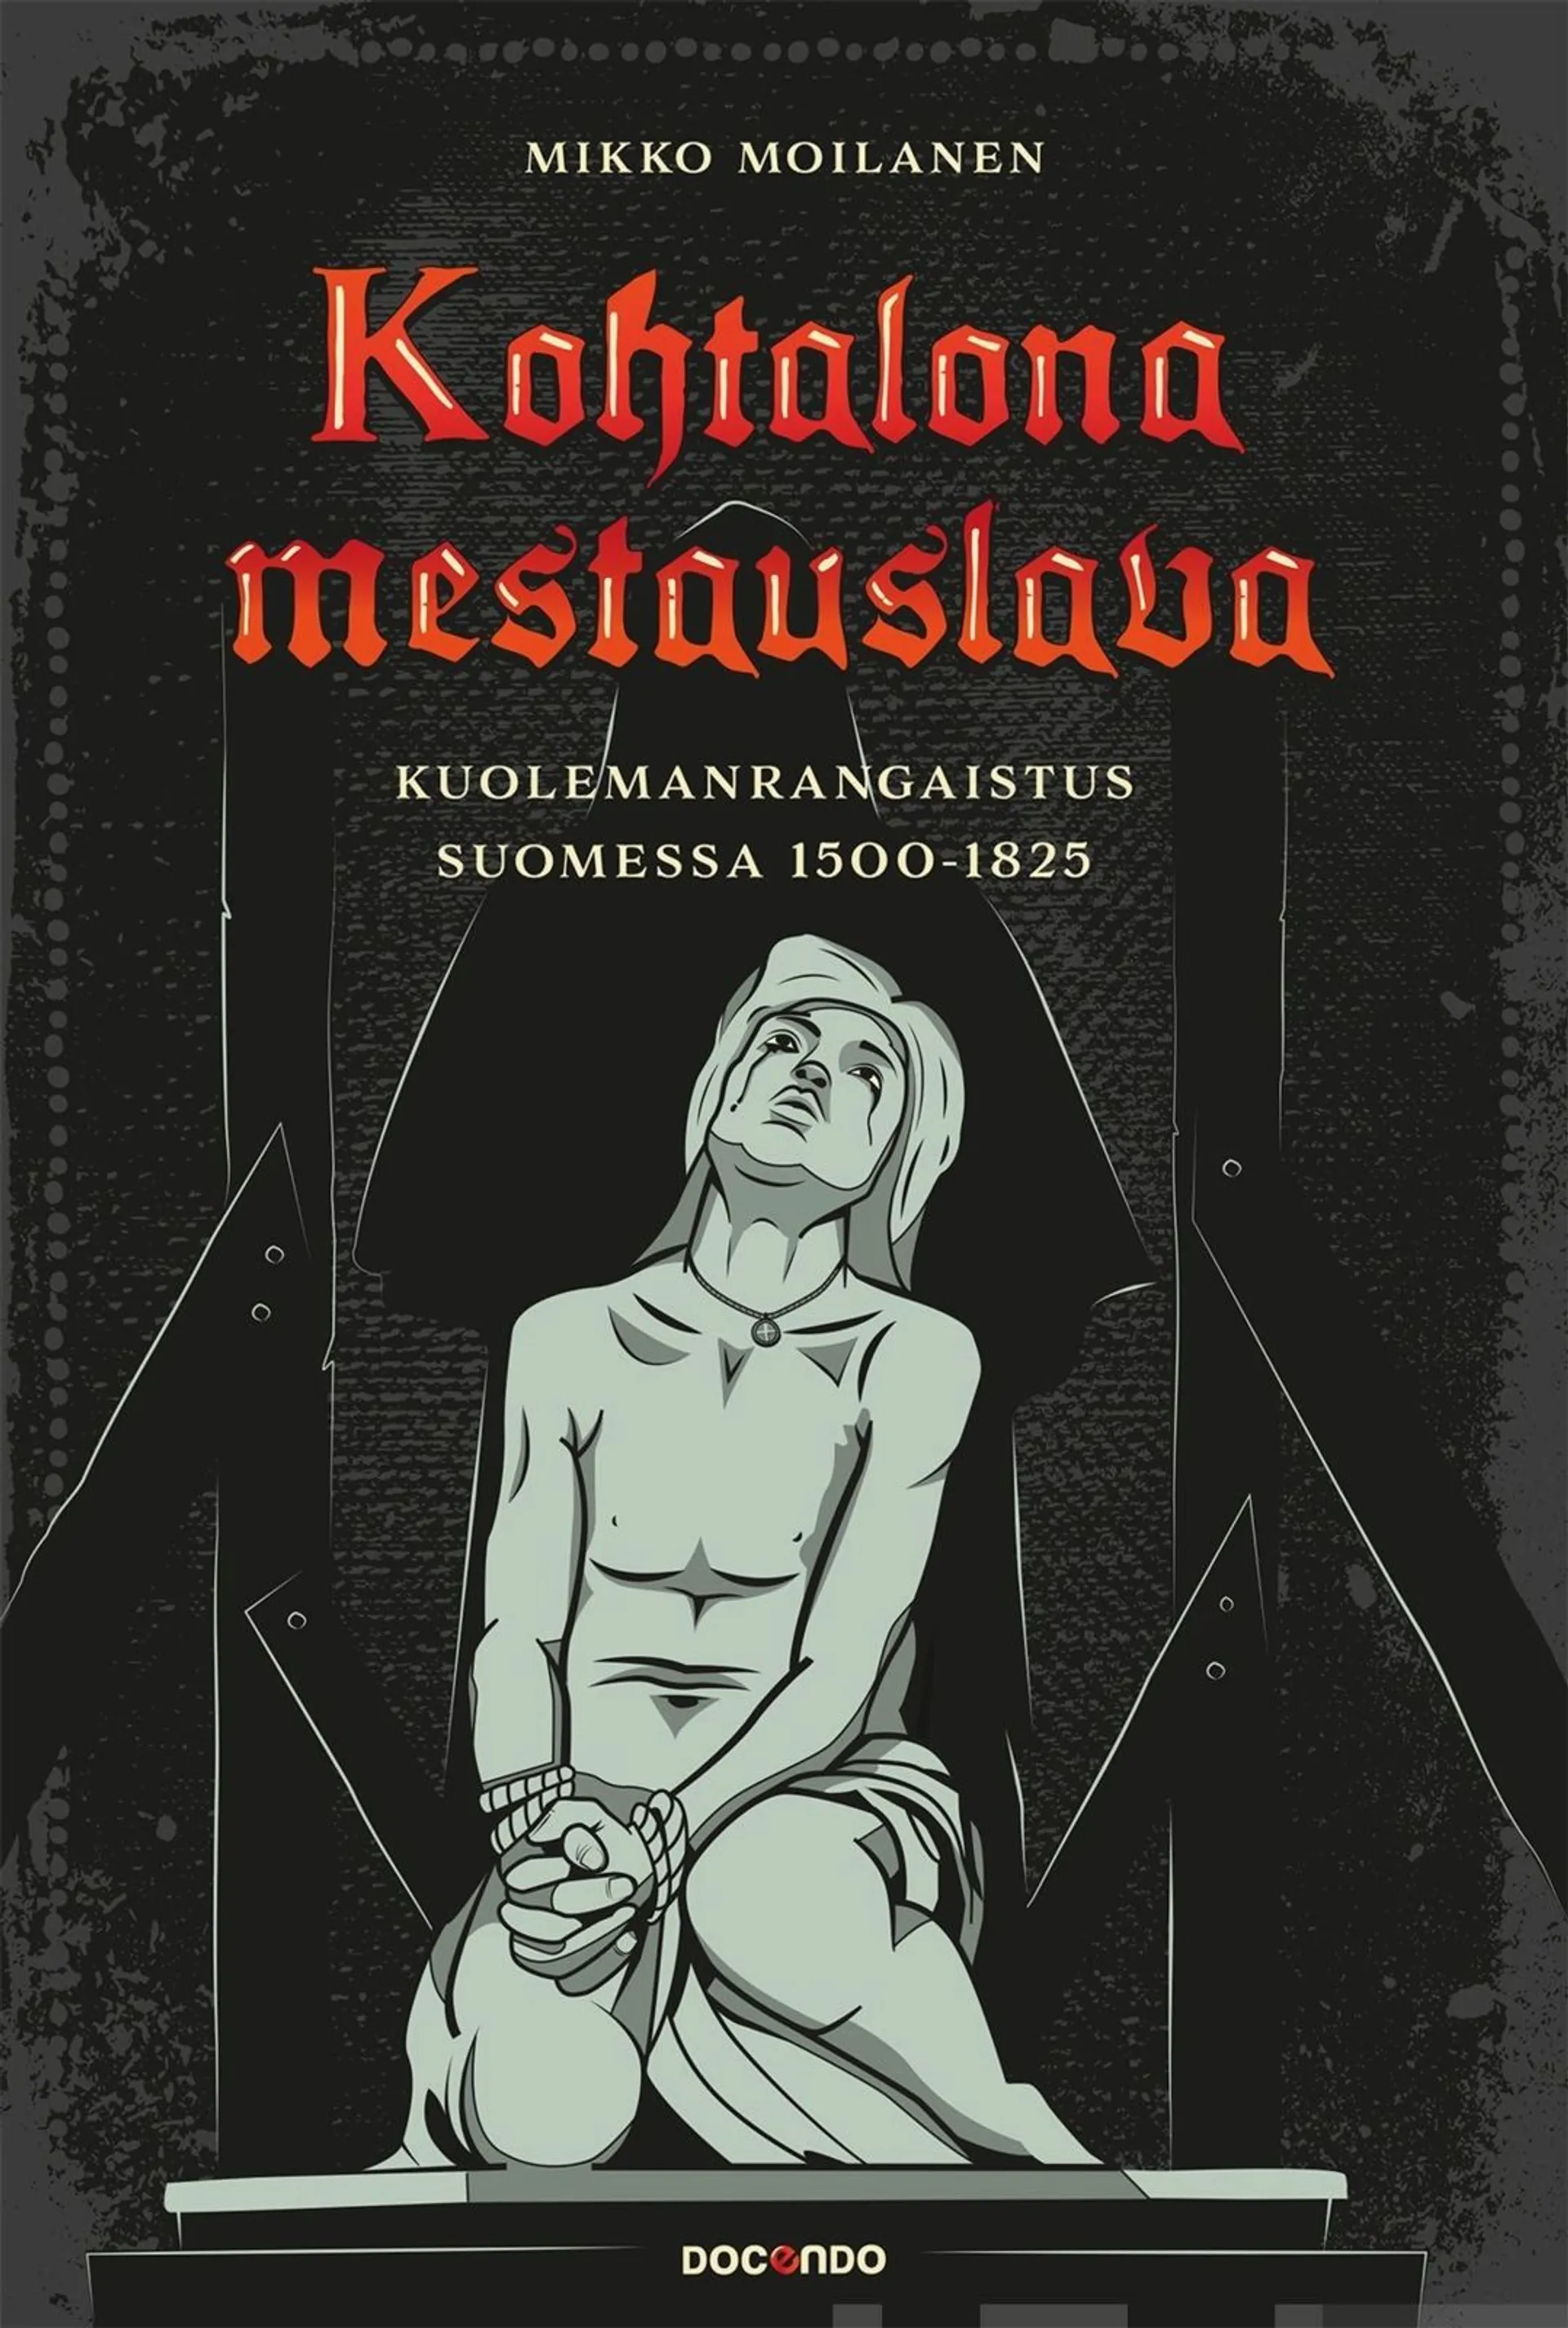 Moilanen, Kohtalona mestauslava - Kuolemanrangaistus Suomessa 1500-1825